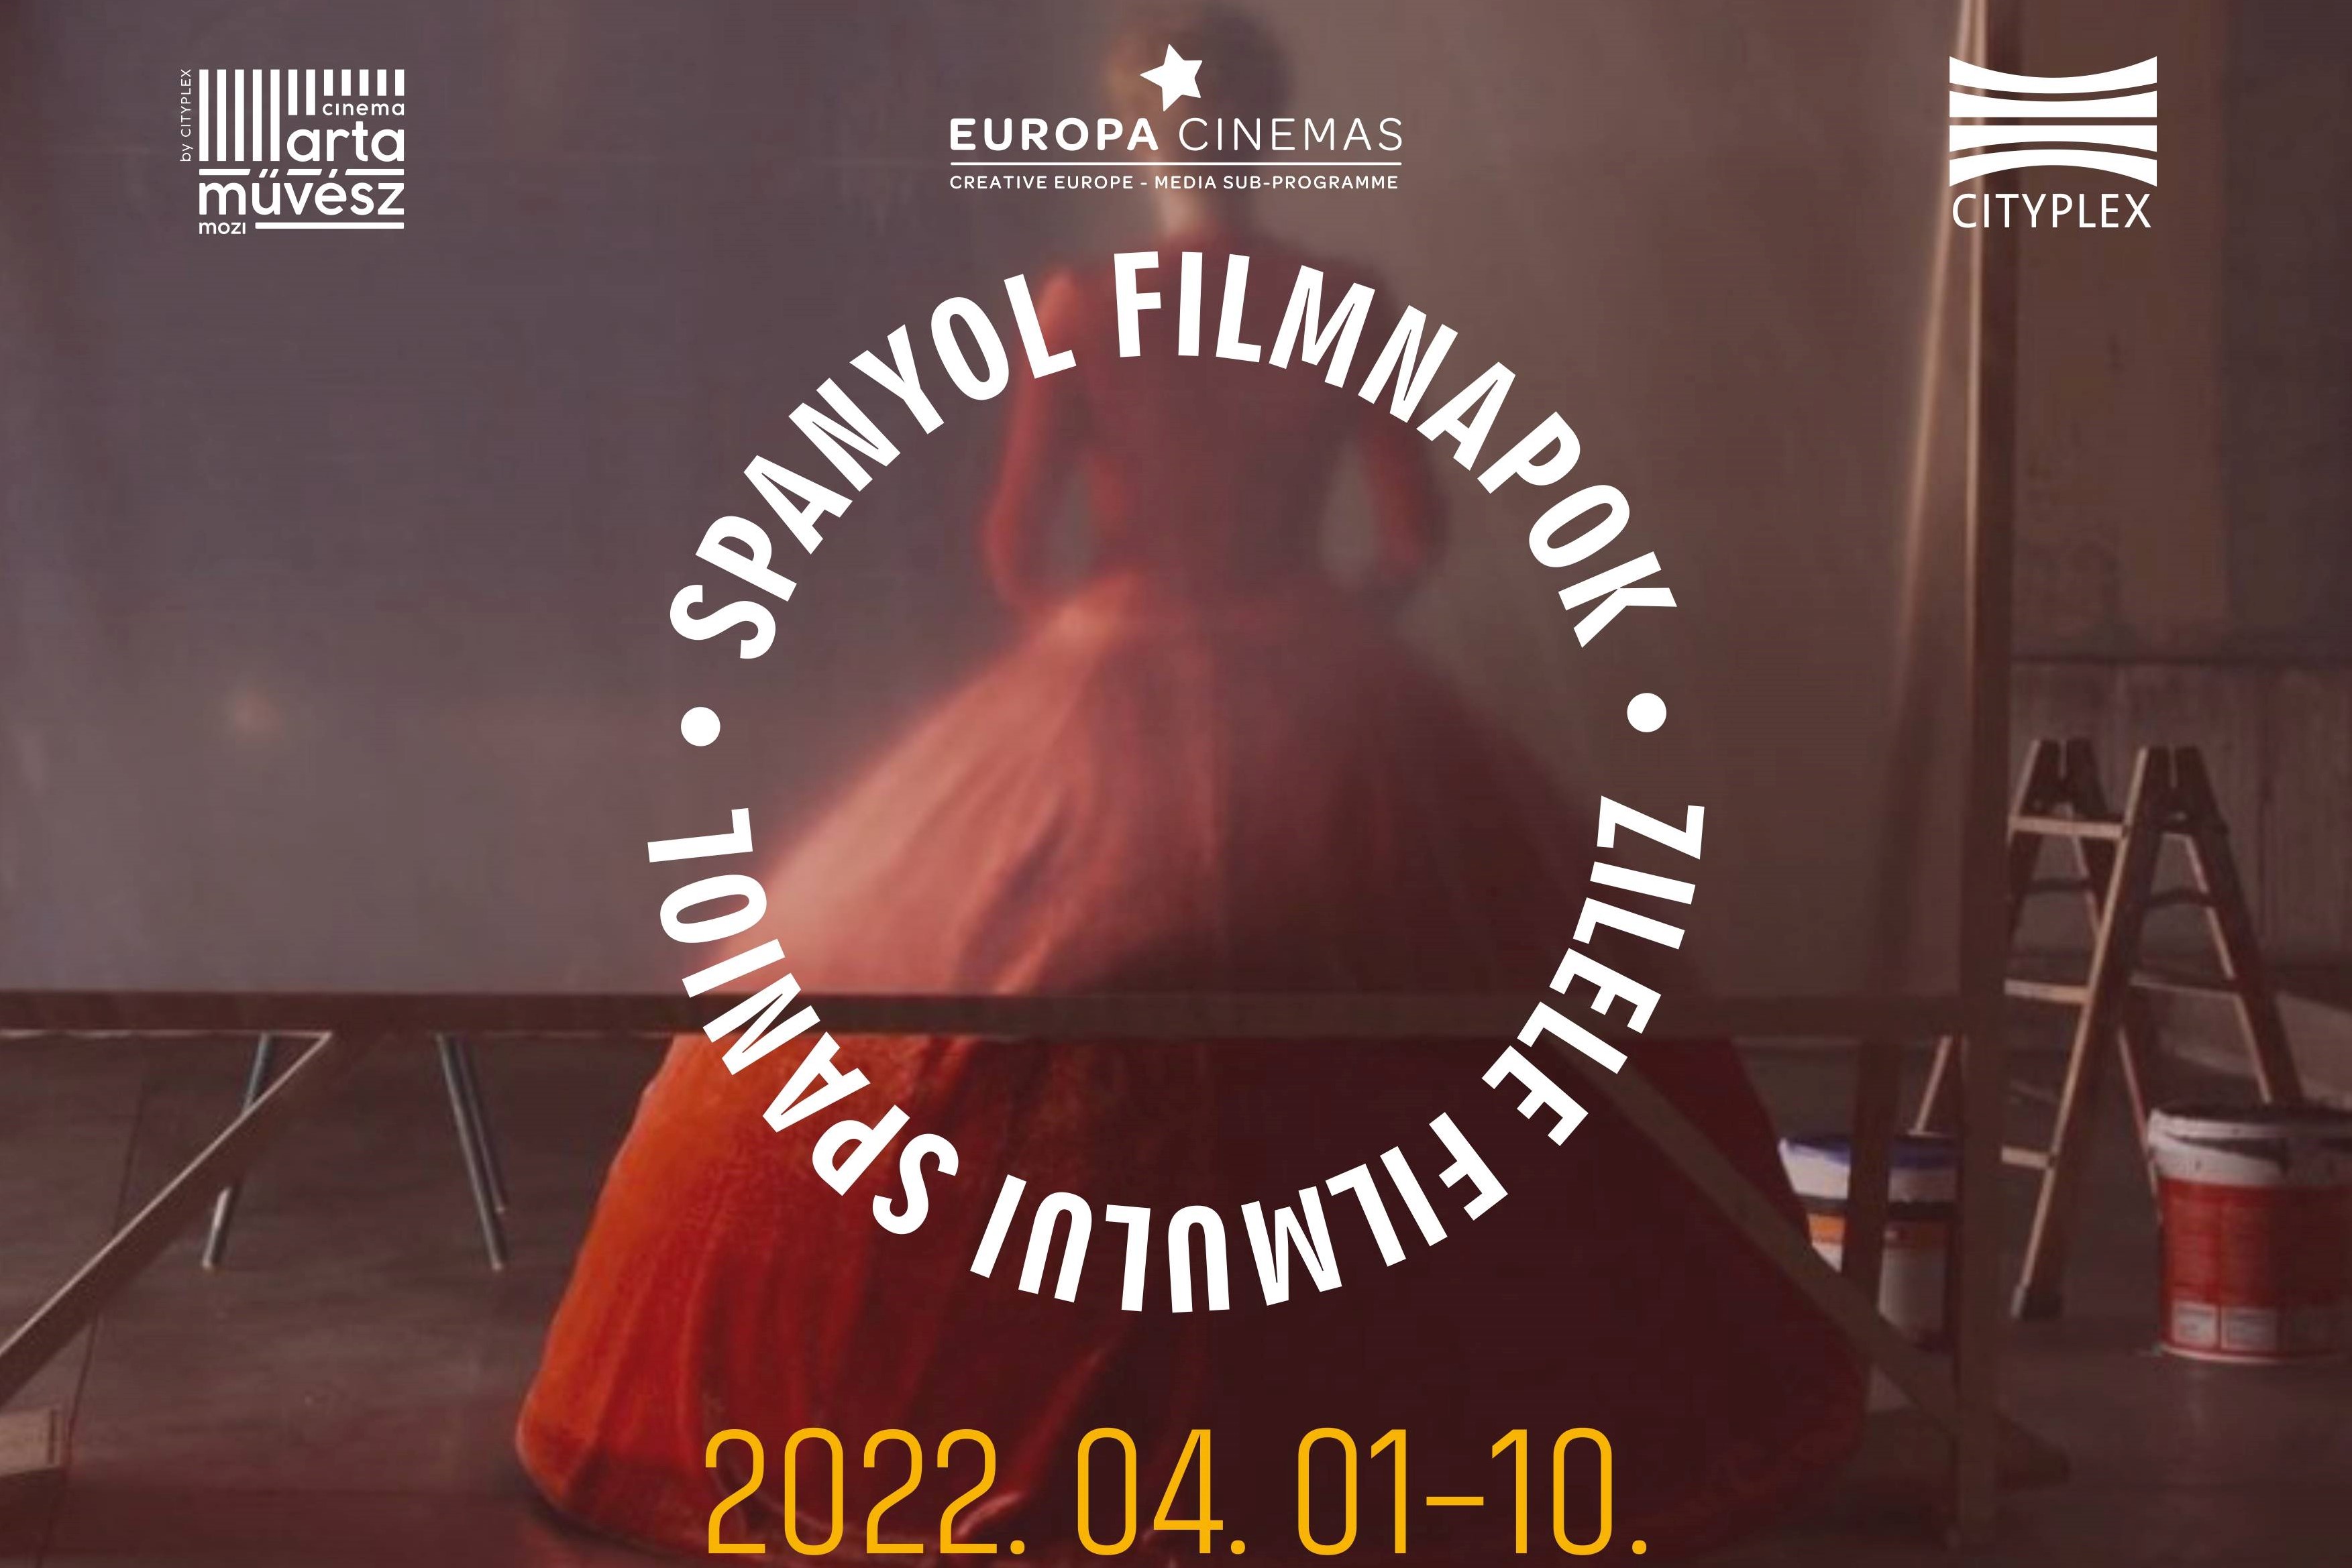 Spanyol filmnapok a sepsiszentgyörgyi Művész moziban